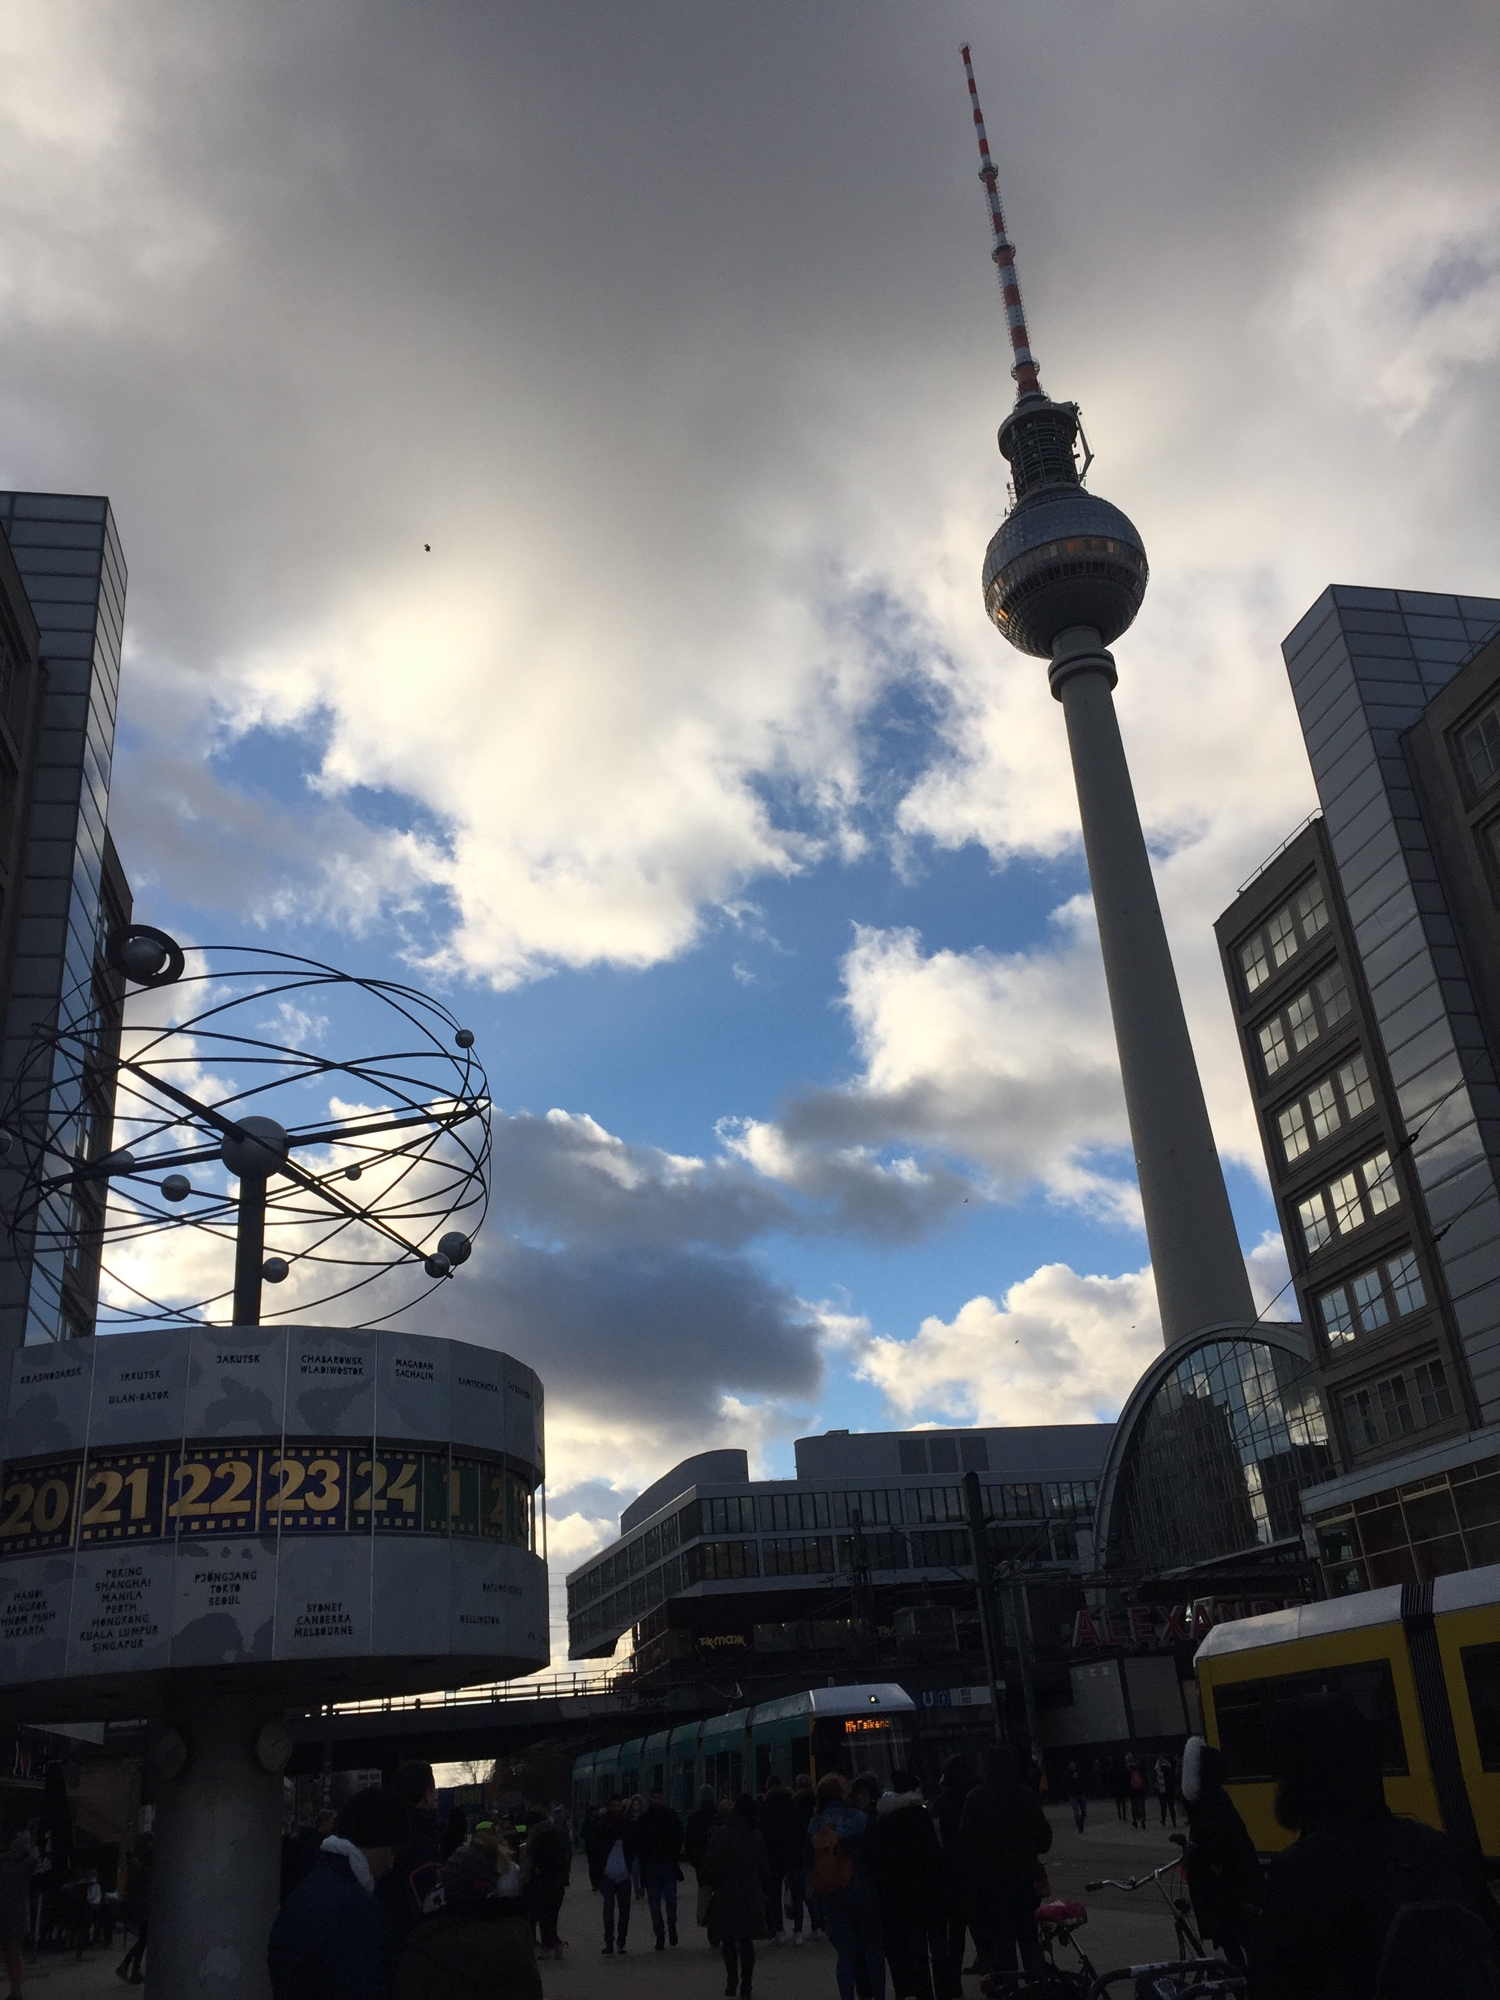 Alexanderplatz, Weltzeituhr links im Vordergrund, Fernsehturm im Hintergrund vor wolkigem Himmel